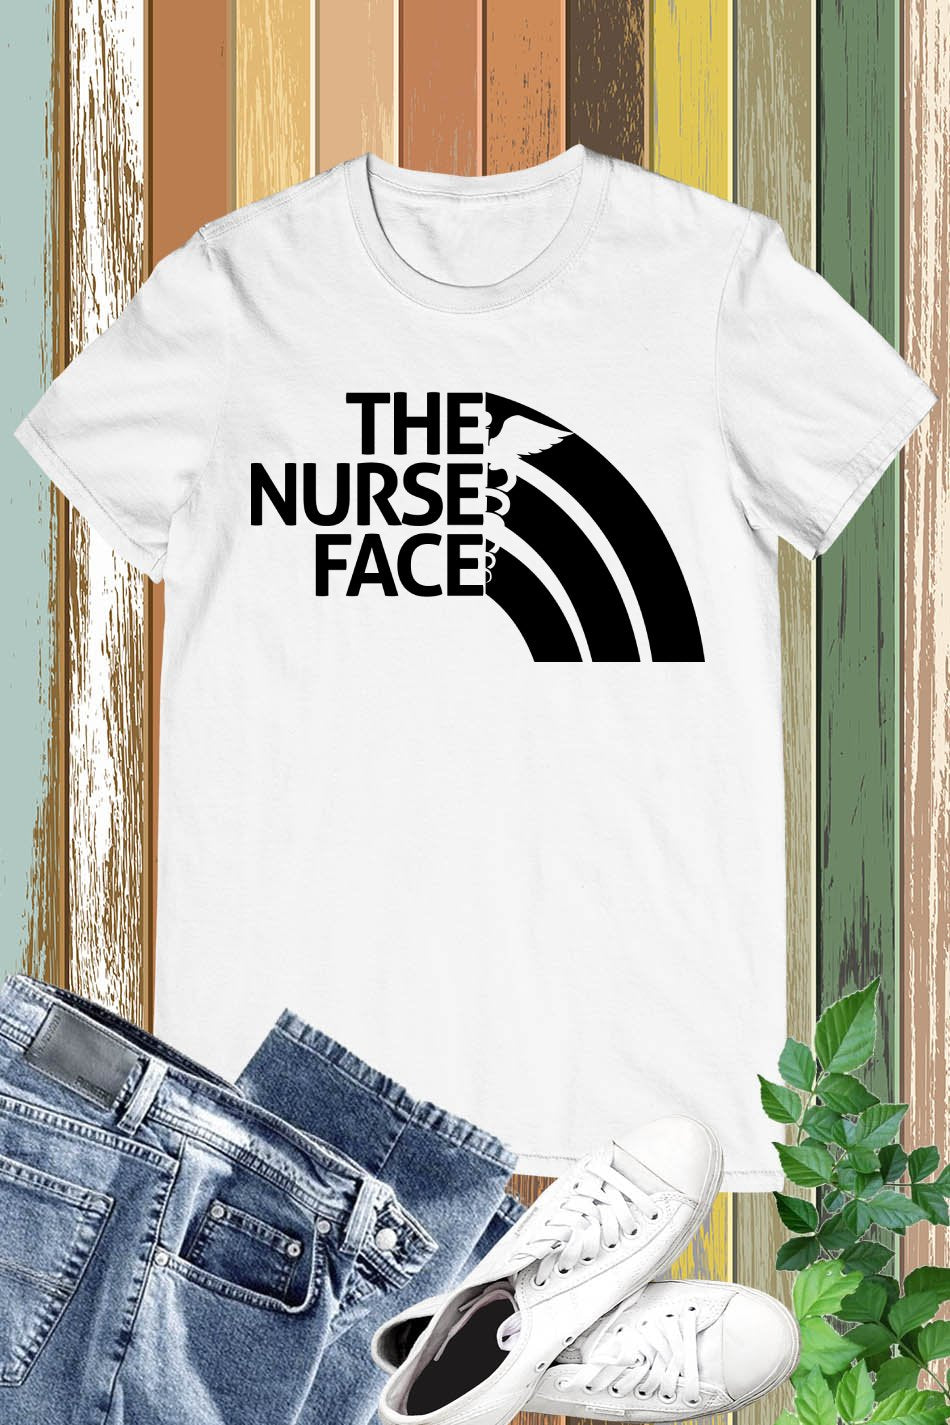 The Nurse Face Shirt